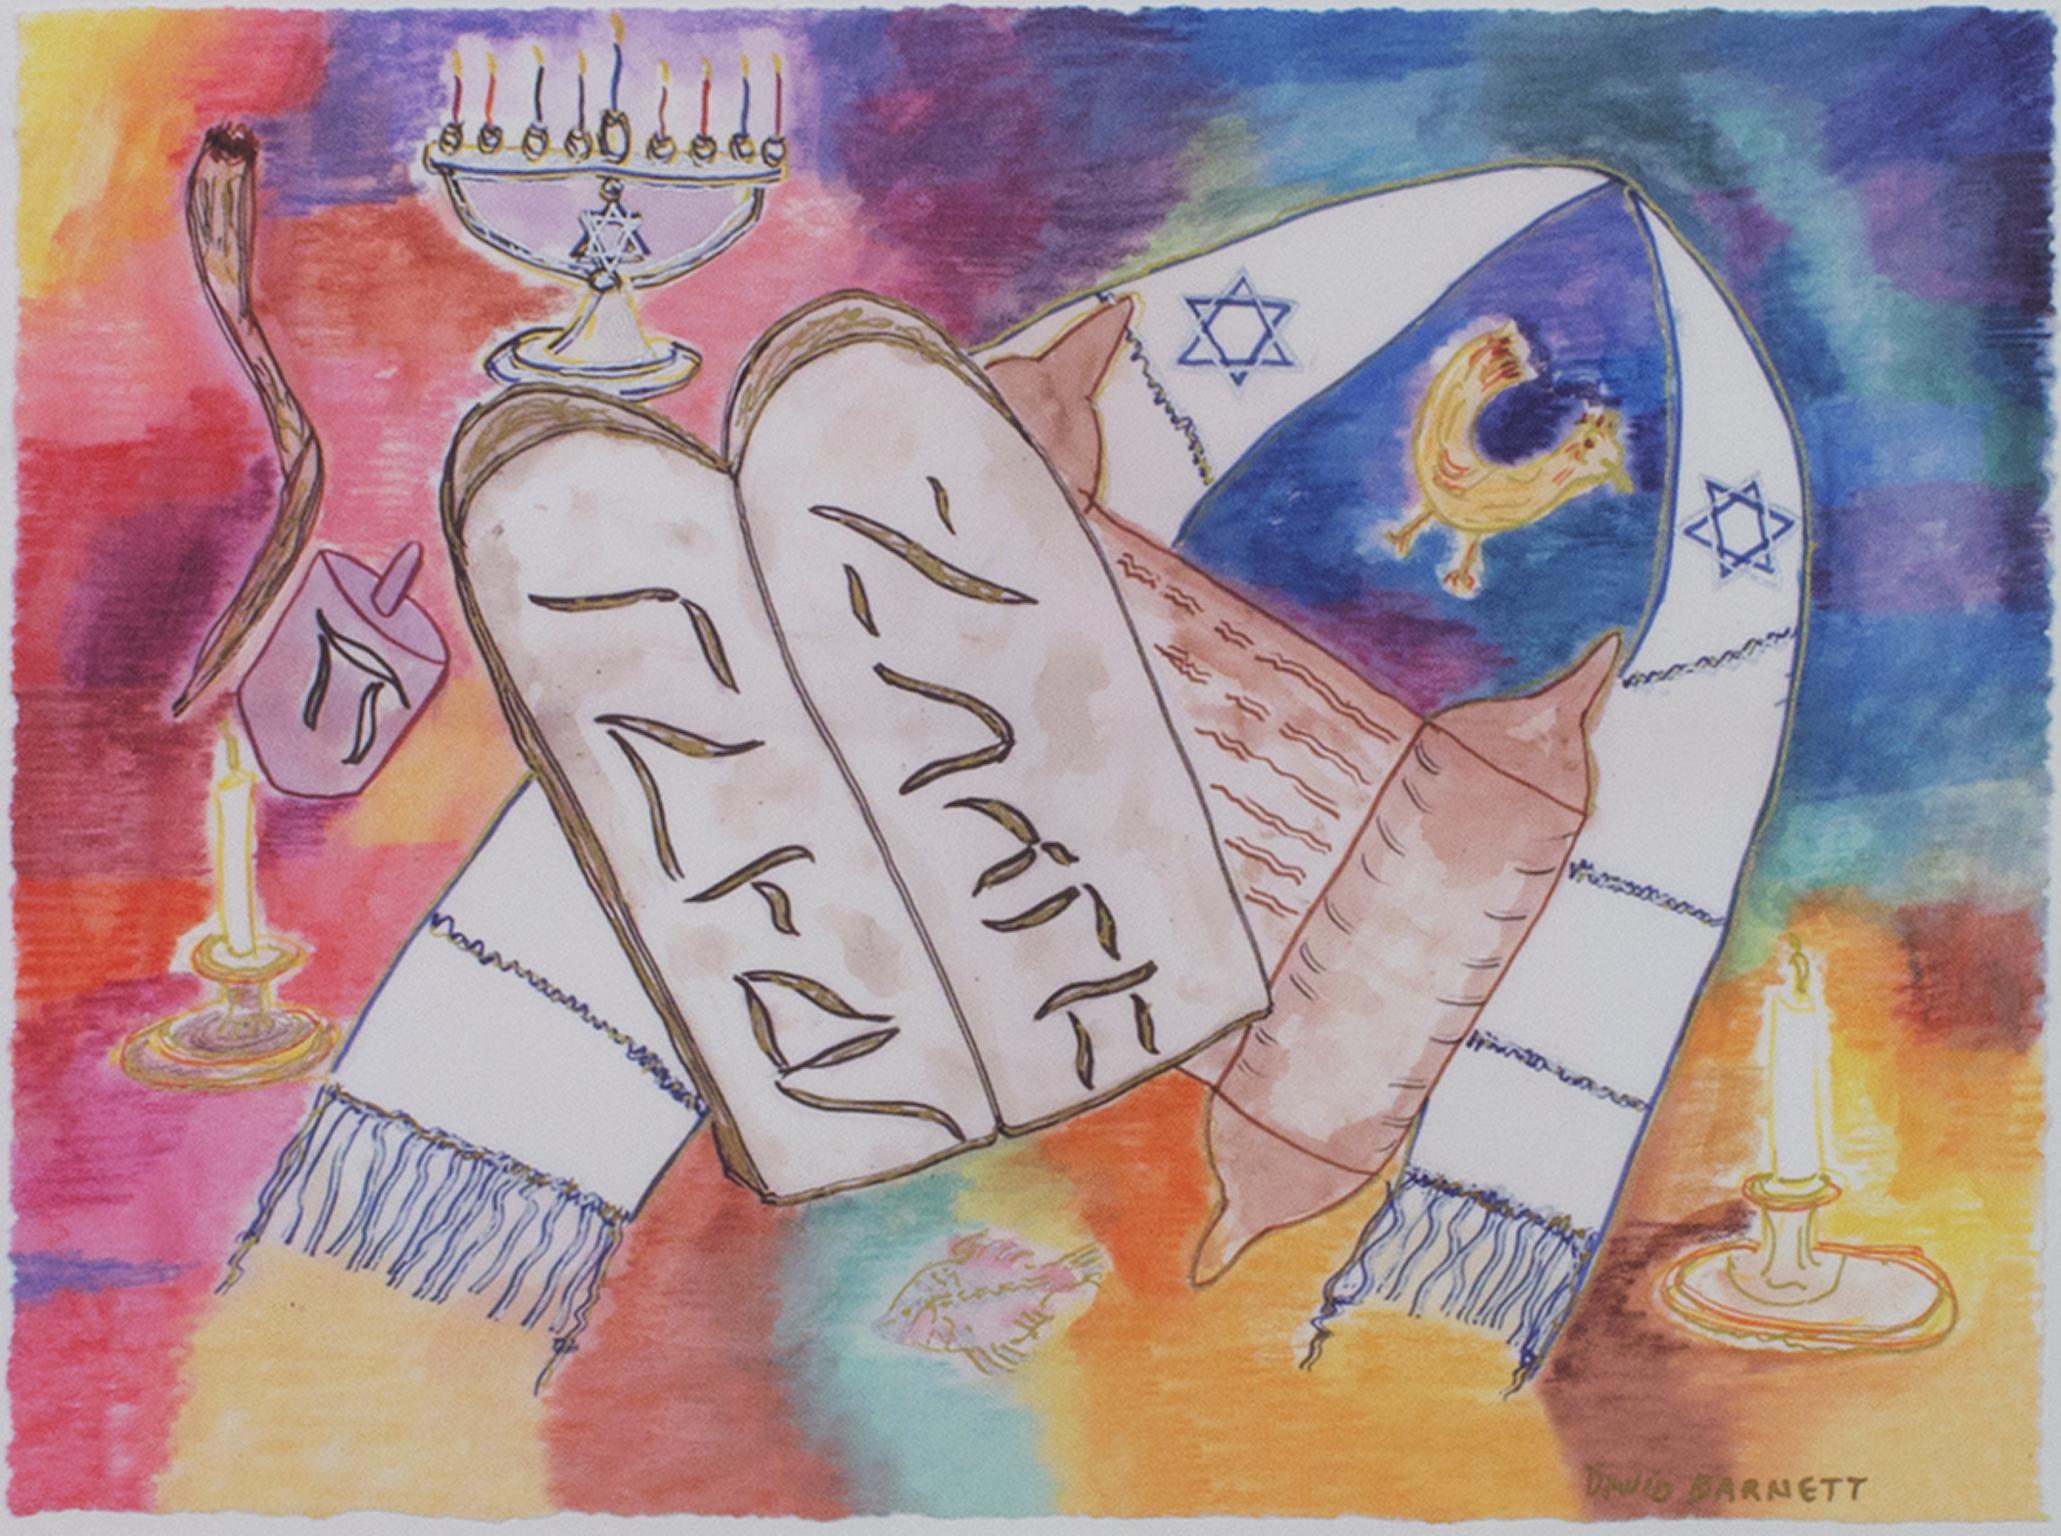 "Zehn Gebote" ist ein Originalgemälde in Mischtechnik von David Barnett, signiert unten rechts. Es zeigt Bilder, die mit dem jüdischen Glauben assoziiert werden, auf einem farbenfrohen Hintergrund aus Blau, Gelb und Rosa. 

Kunst Größe: 9" x